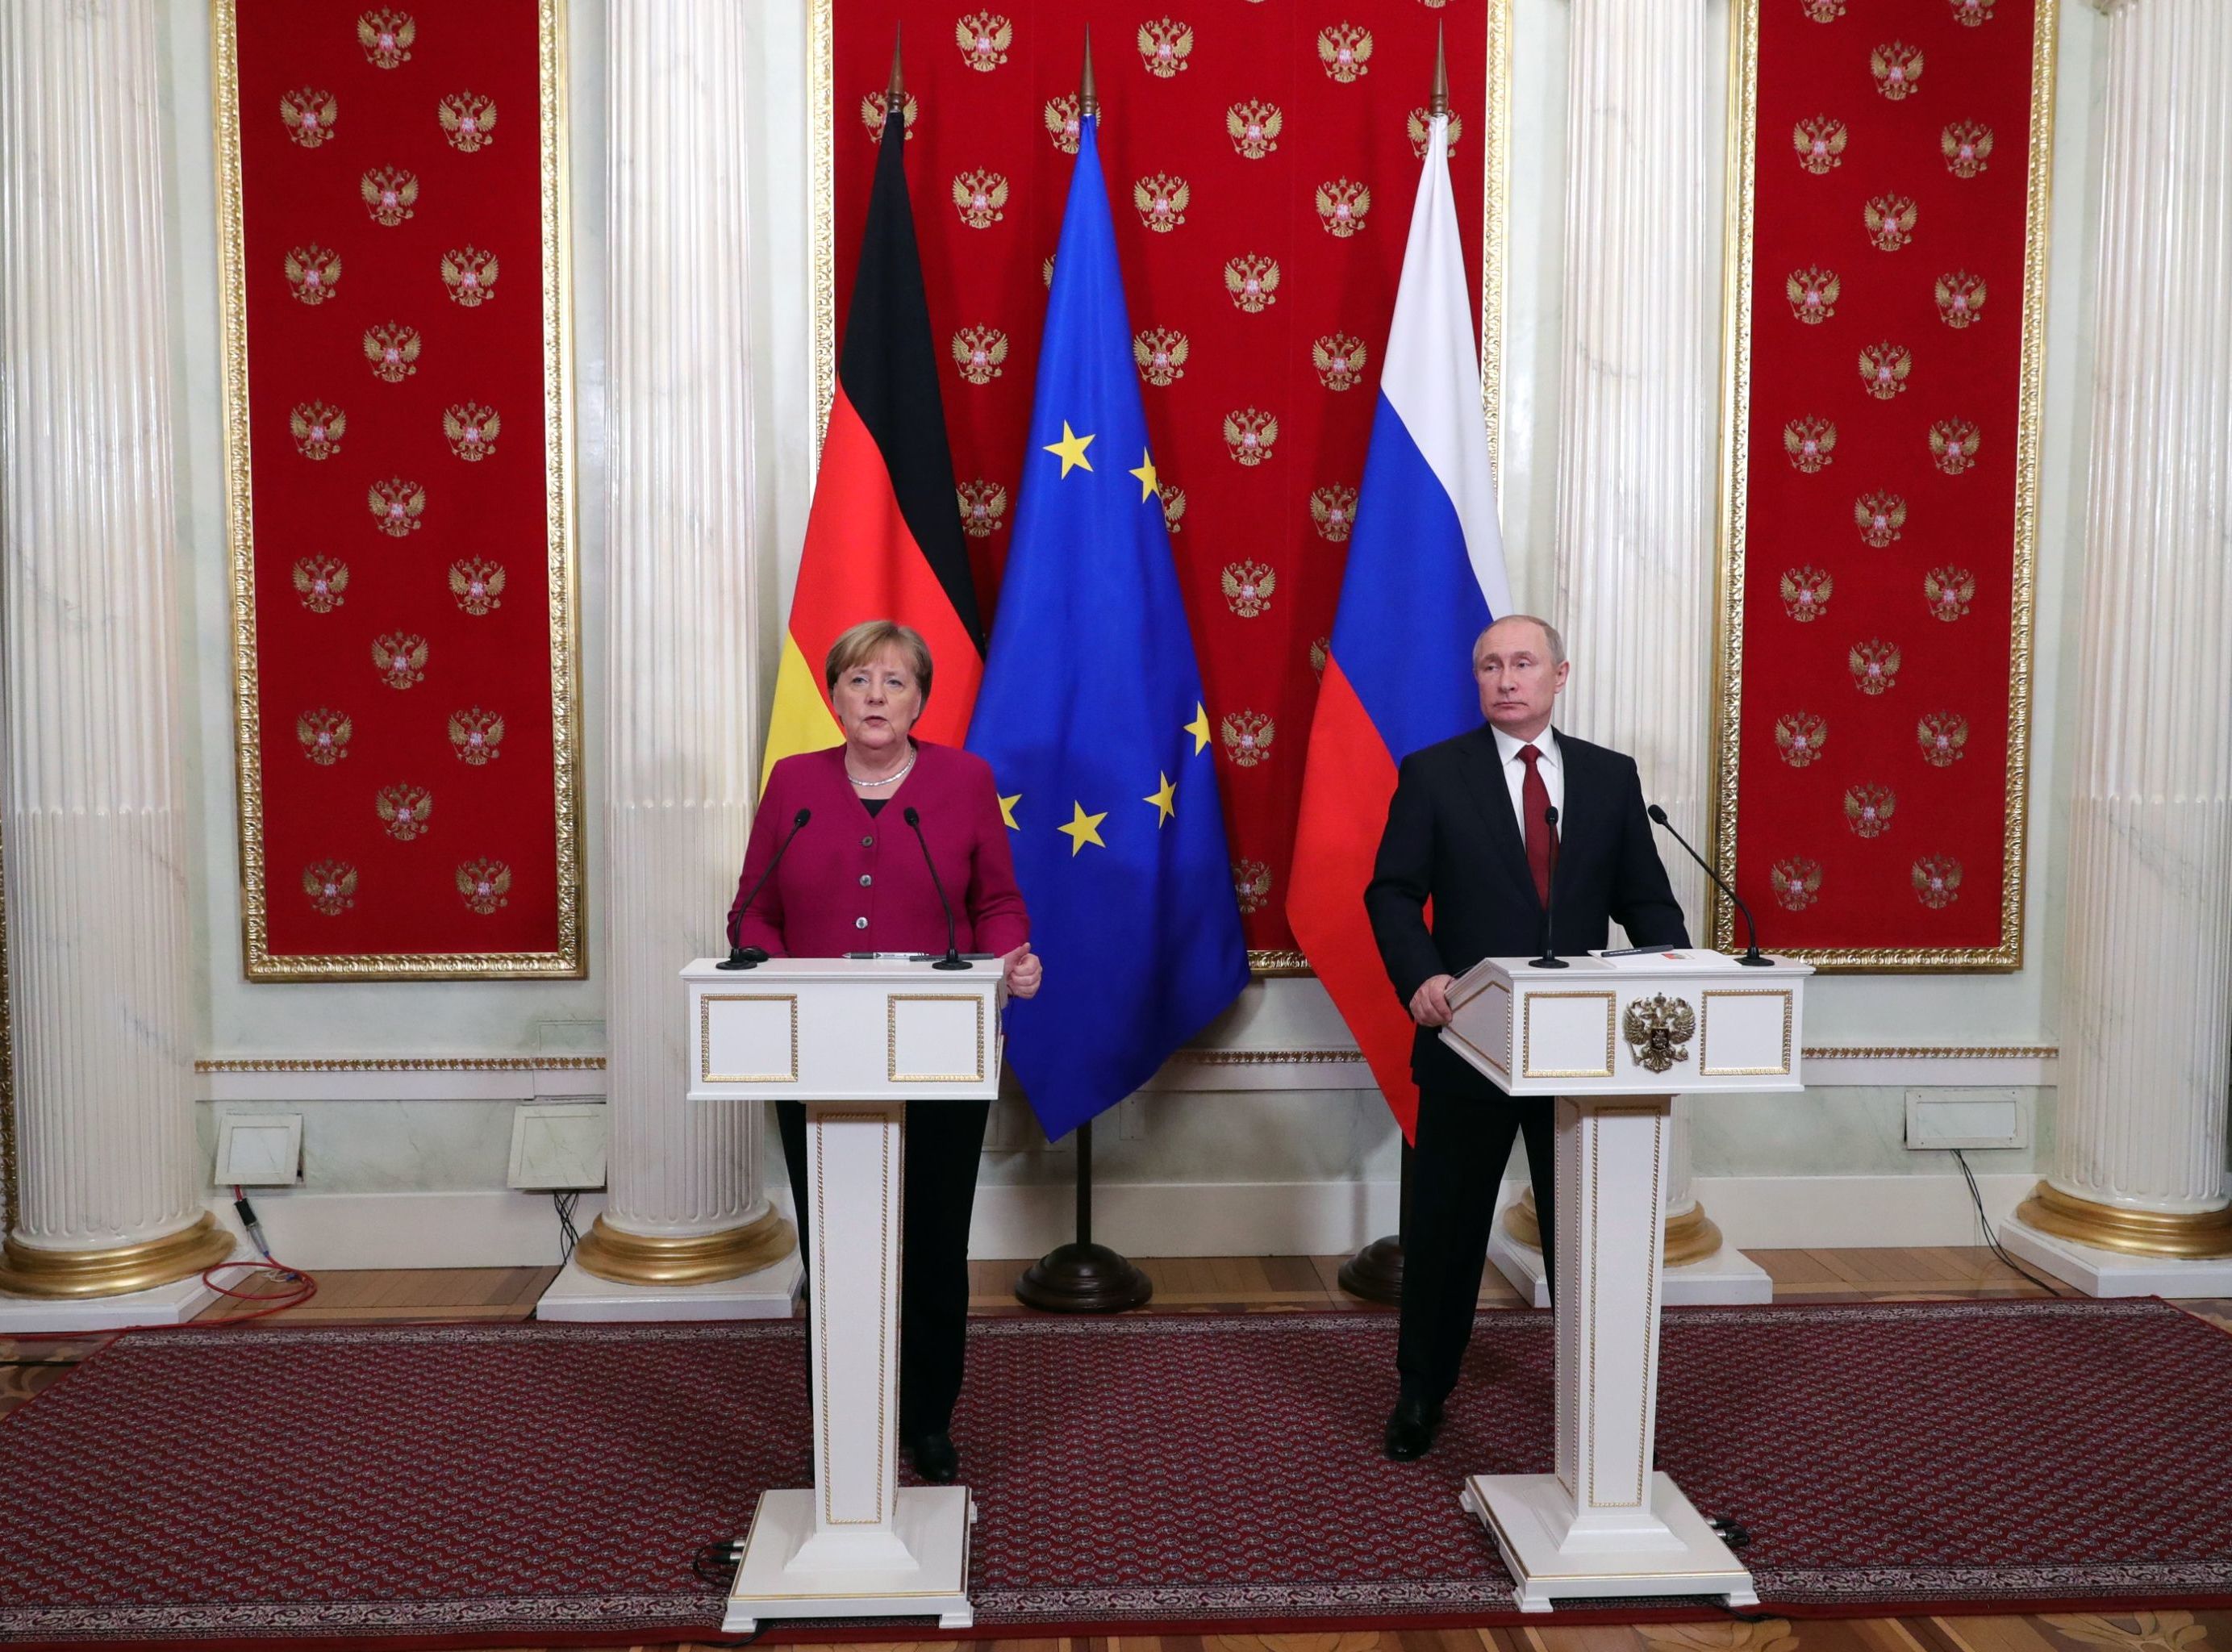 11 января 2020. Президент РФ Владимир Путин и федеральный канцлер Германии Ангела Меркель во время совместной пресс-конференции по итогам встречи.